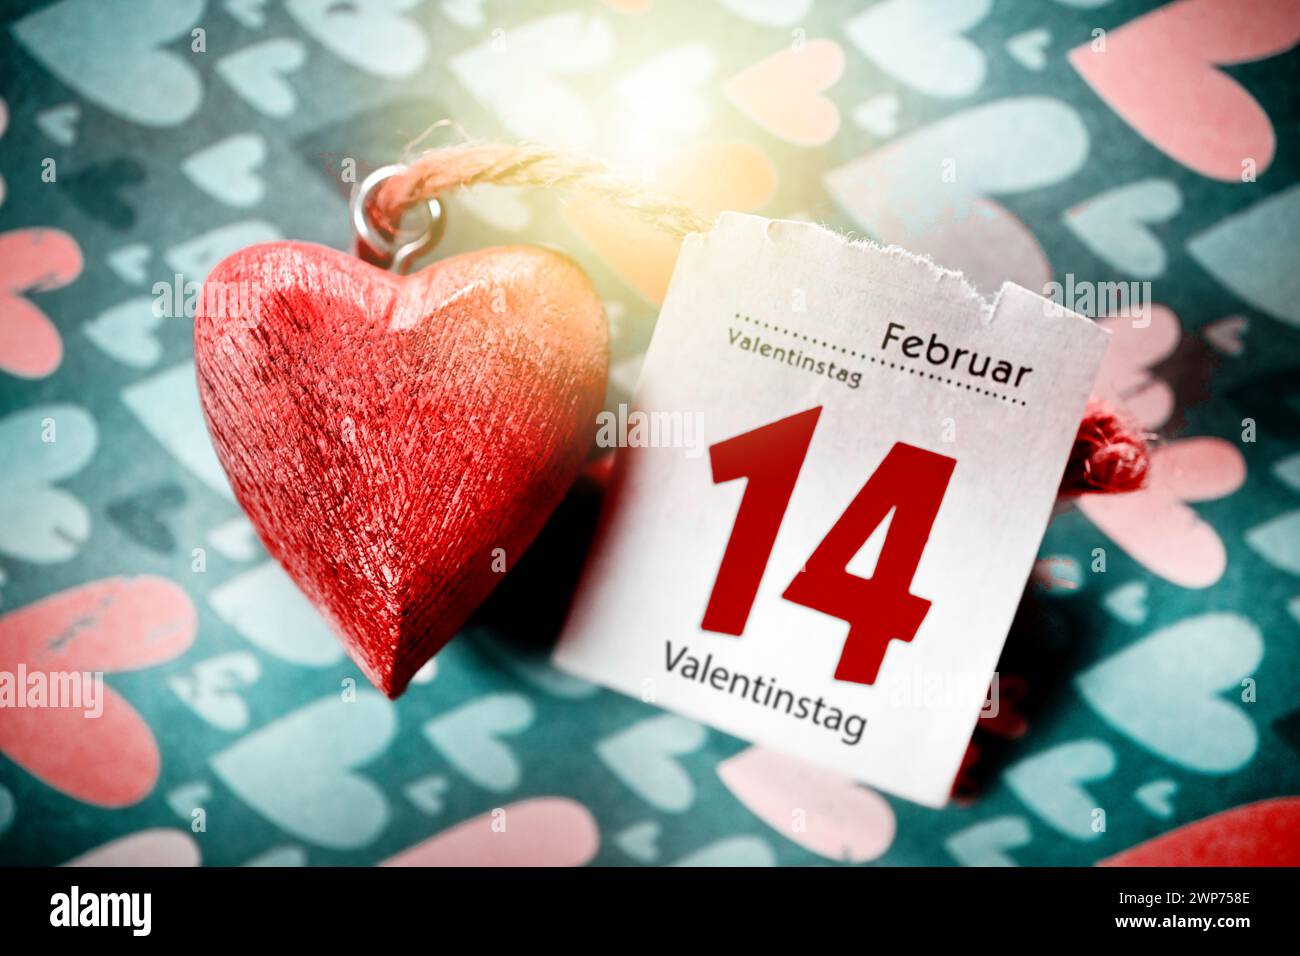 FOTOMONTAGE, Hölzernes Herz mit Kalenderblatt vom 14. Febbraio, Symbolfoto Valentinstag Foto Stock